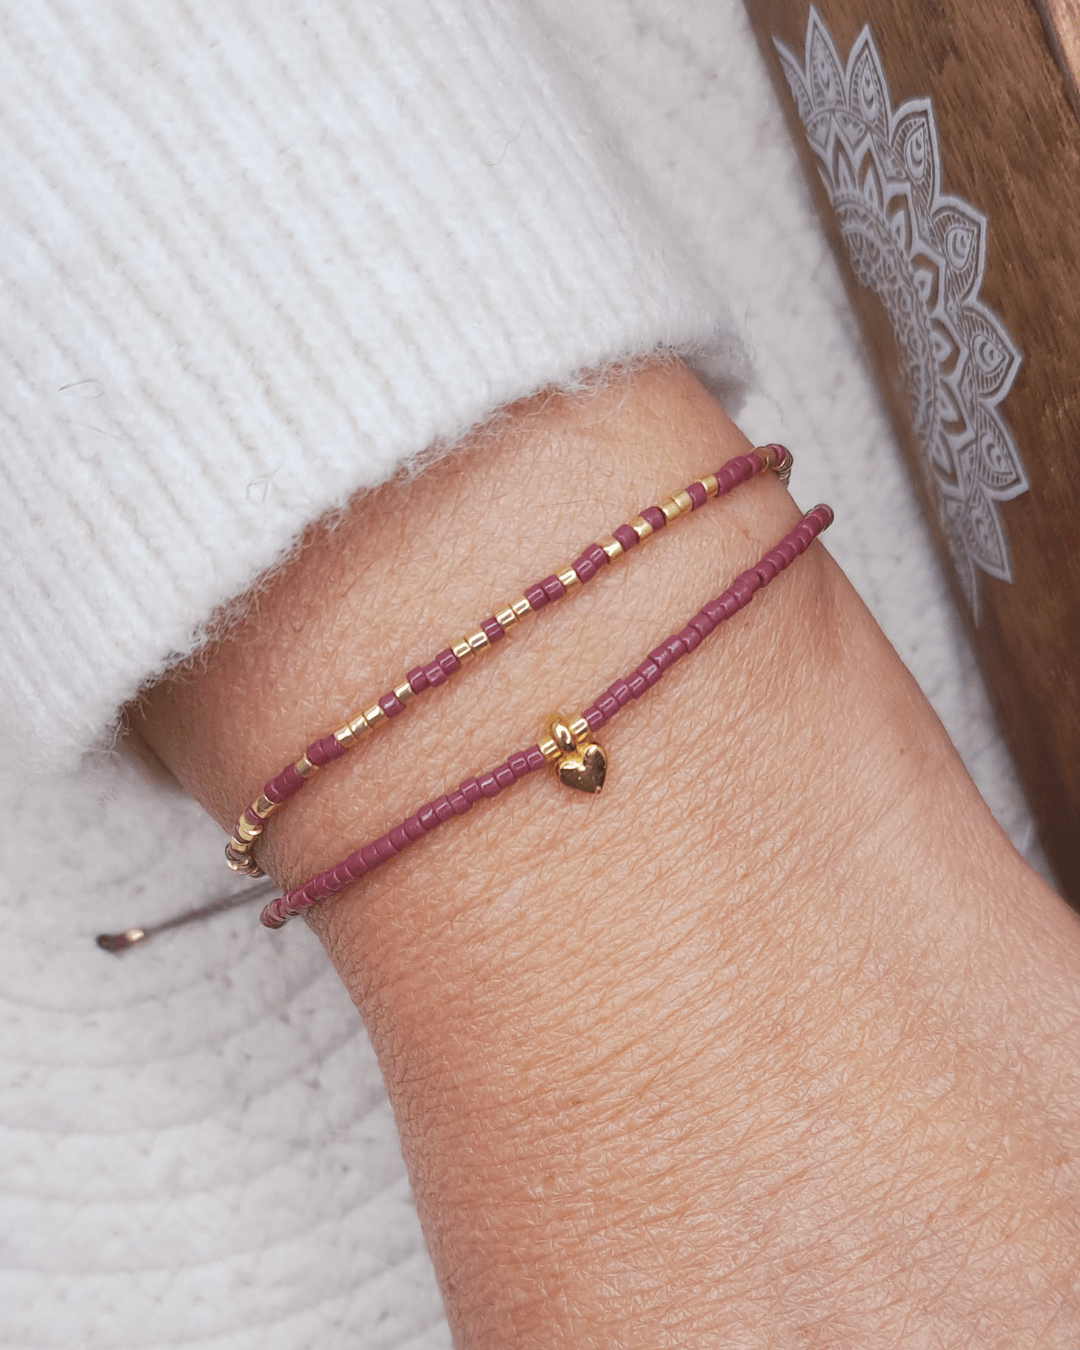 Découvrez le bracelet Bihotza par Oyartza Hontza : un bijou unique inspirée de l'énergie des couleurs. Deux rangs de perles Miyuki et une mini breloque cœur forment ce bijou énergétique conçu avec soin. Portez-le au quotidien pour bénéficier de ces bienfaits. Une création artisanale dédiée à vous accompagner vers une connexion profonde avec vous-même.